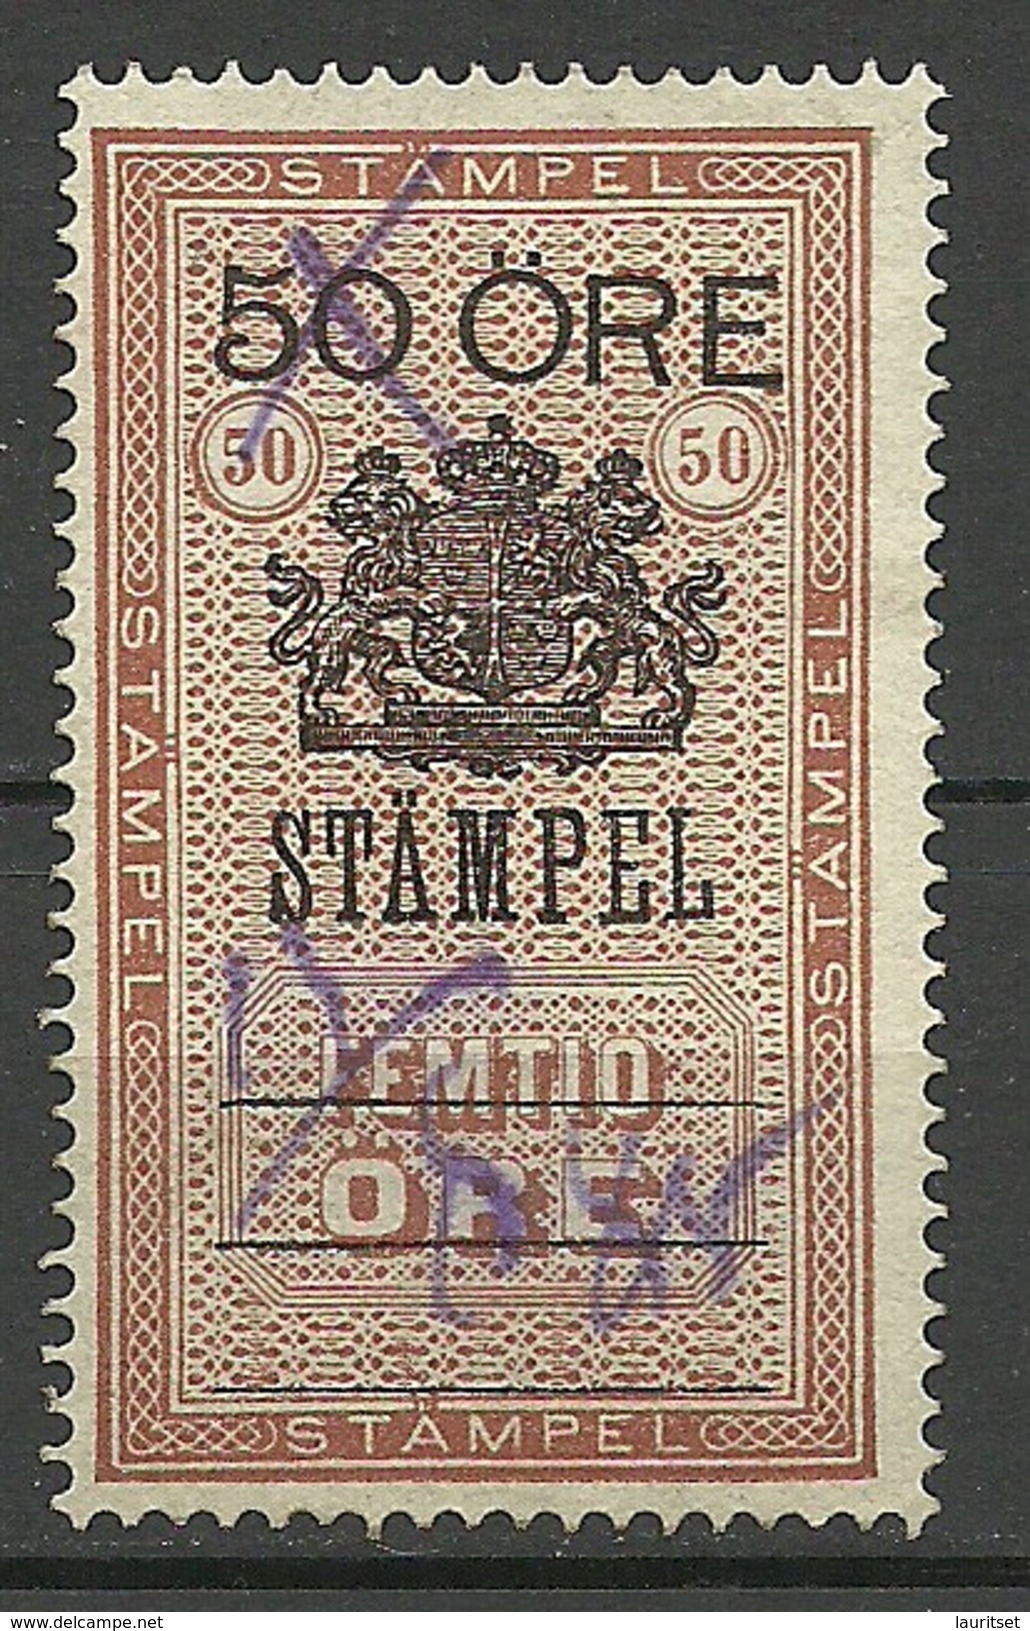 SCHWEDEN Sweden O 1885 Stempelmarke 50 öre O - Revenue Stamps